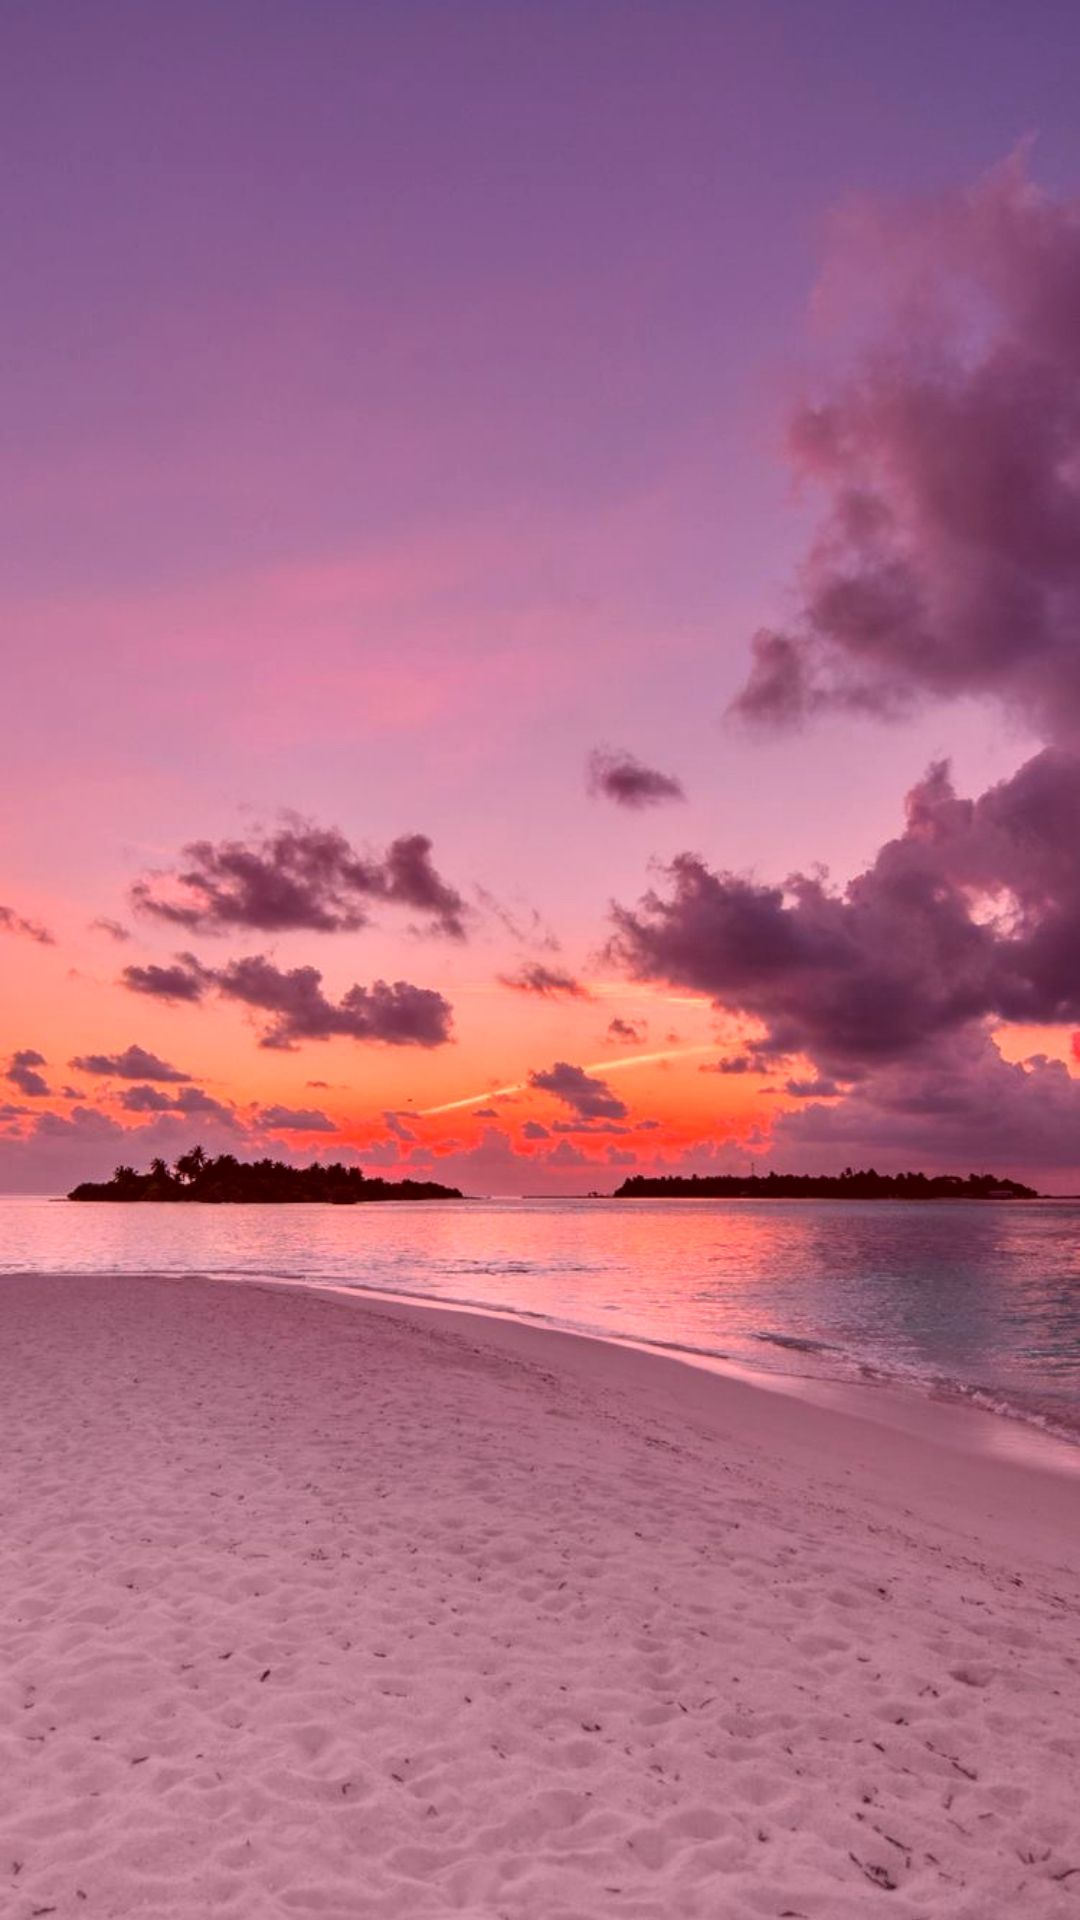 1080x1920 Iphone Wallpaper Sunset | Sunset iphone wallpaper, Iphone wallpaper bright, Purple beach